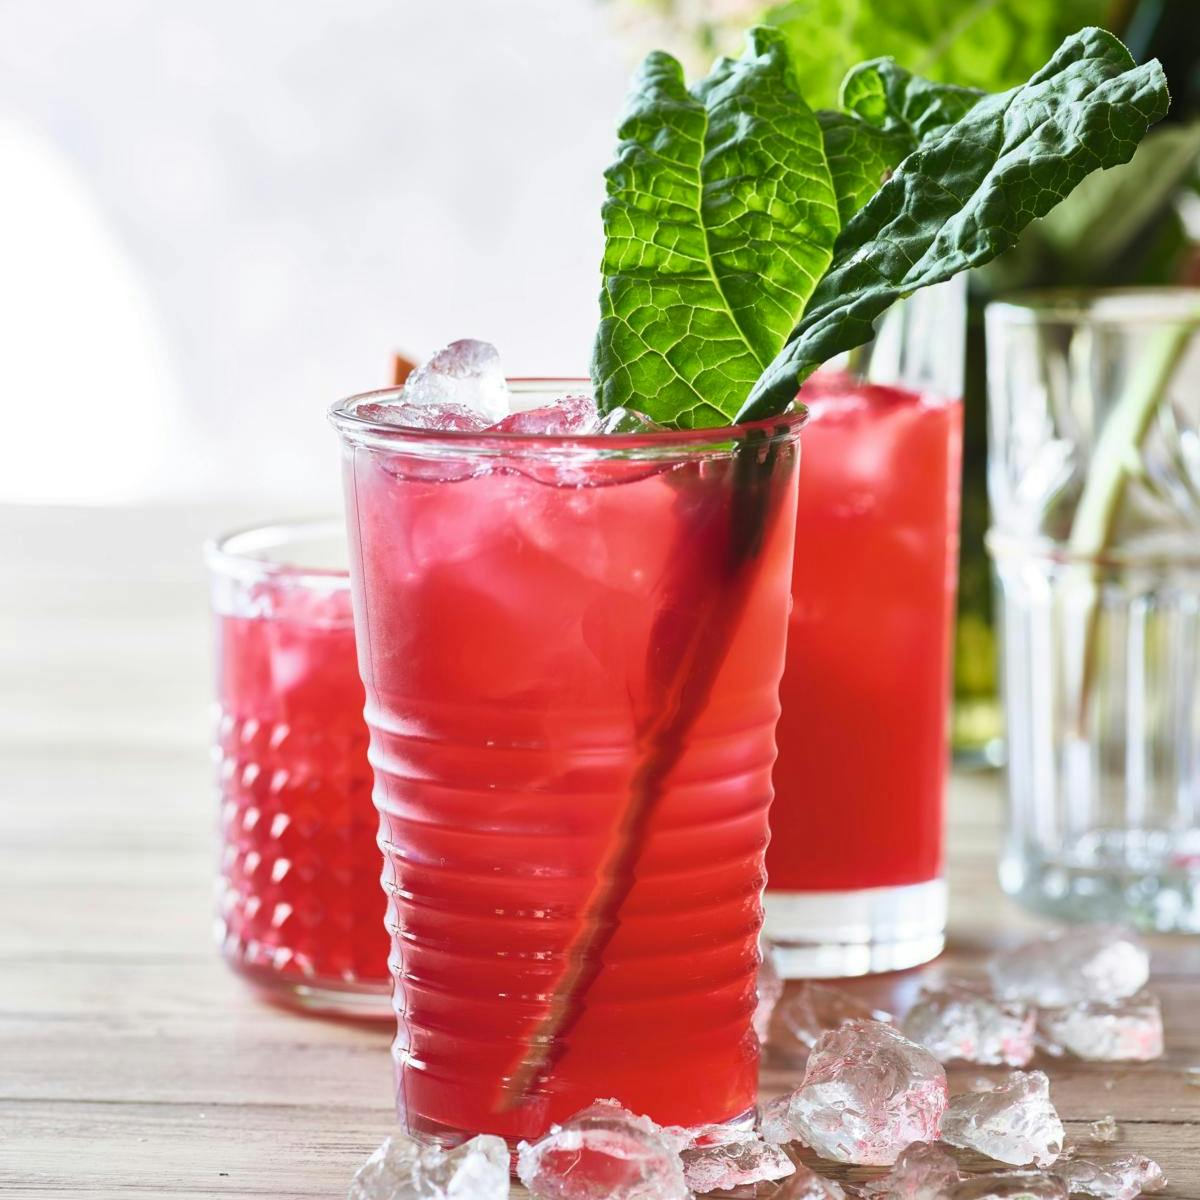 Flot drink med rabarber - rabarberblad til pynt